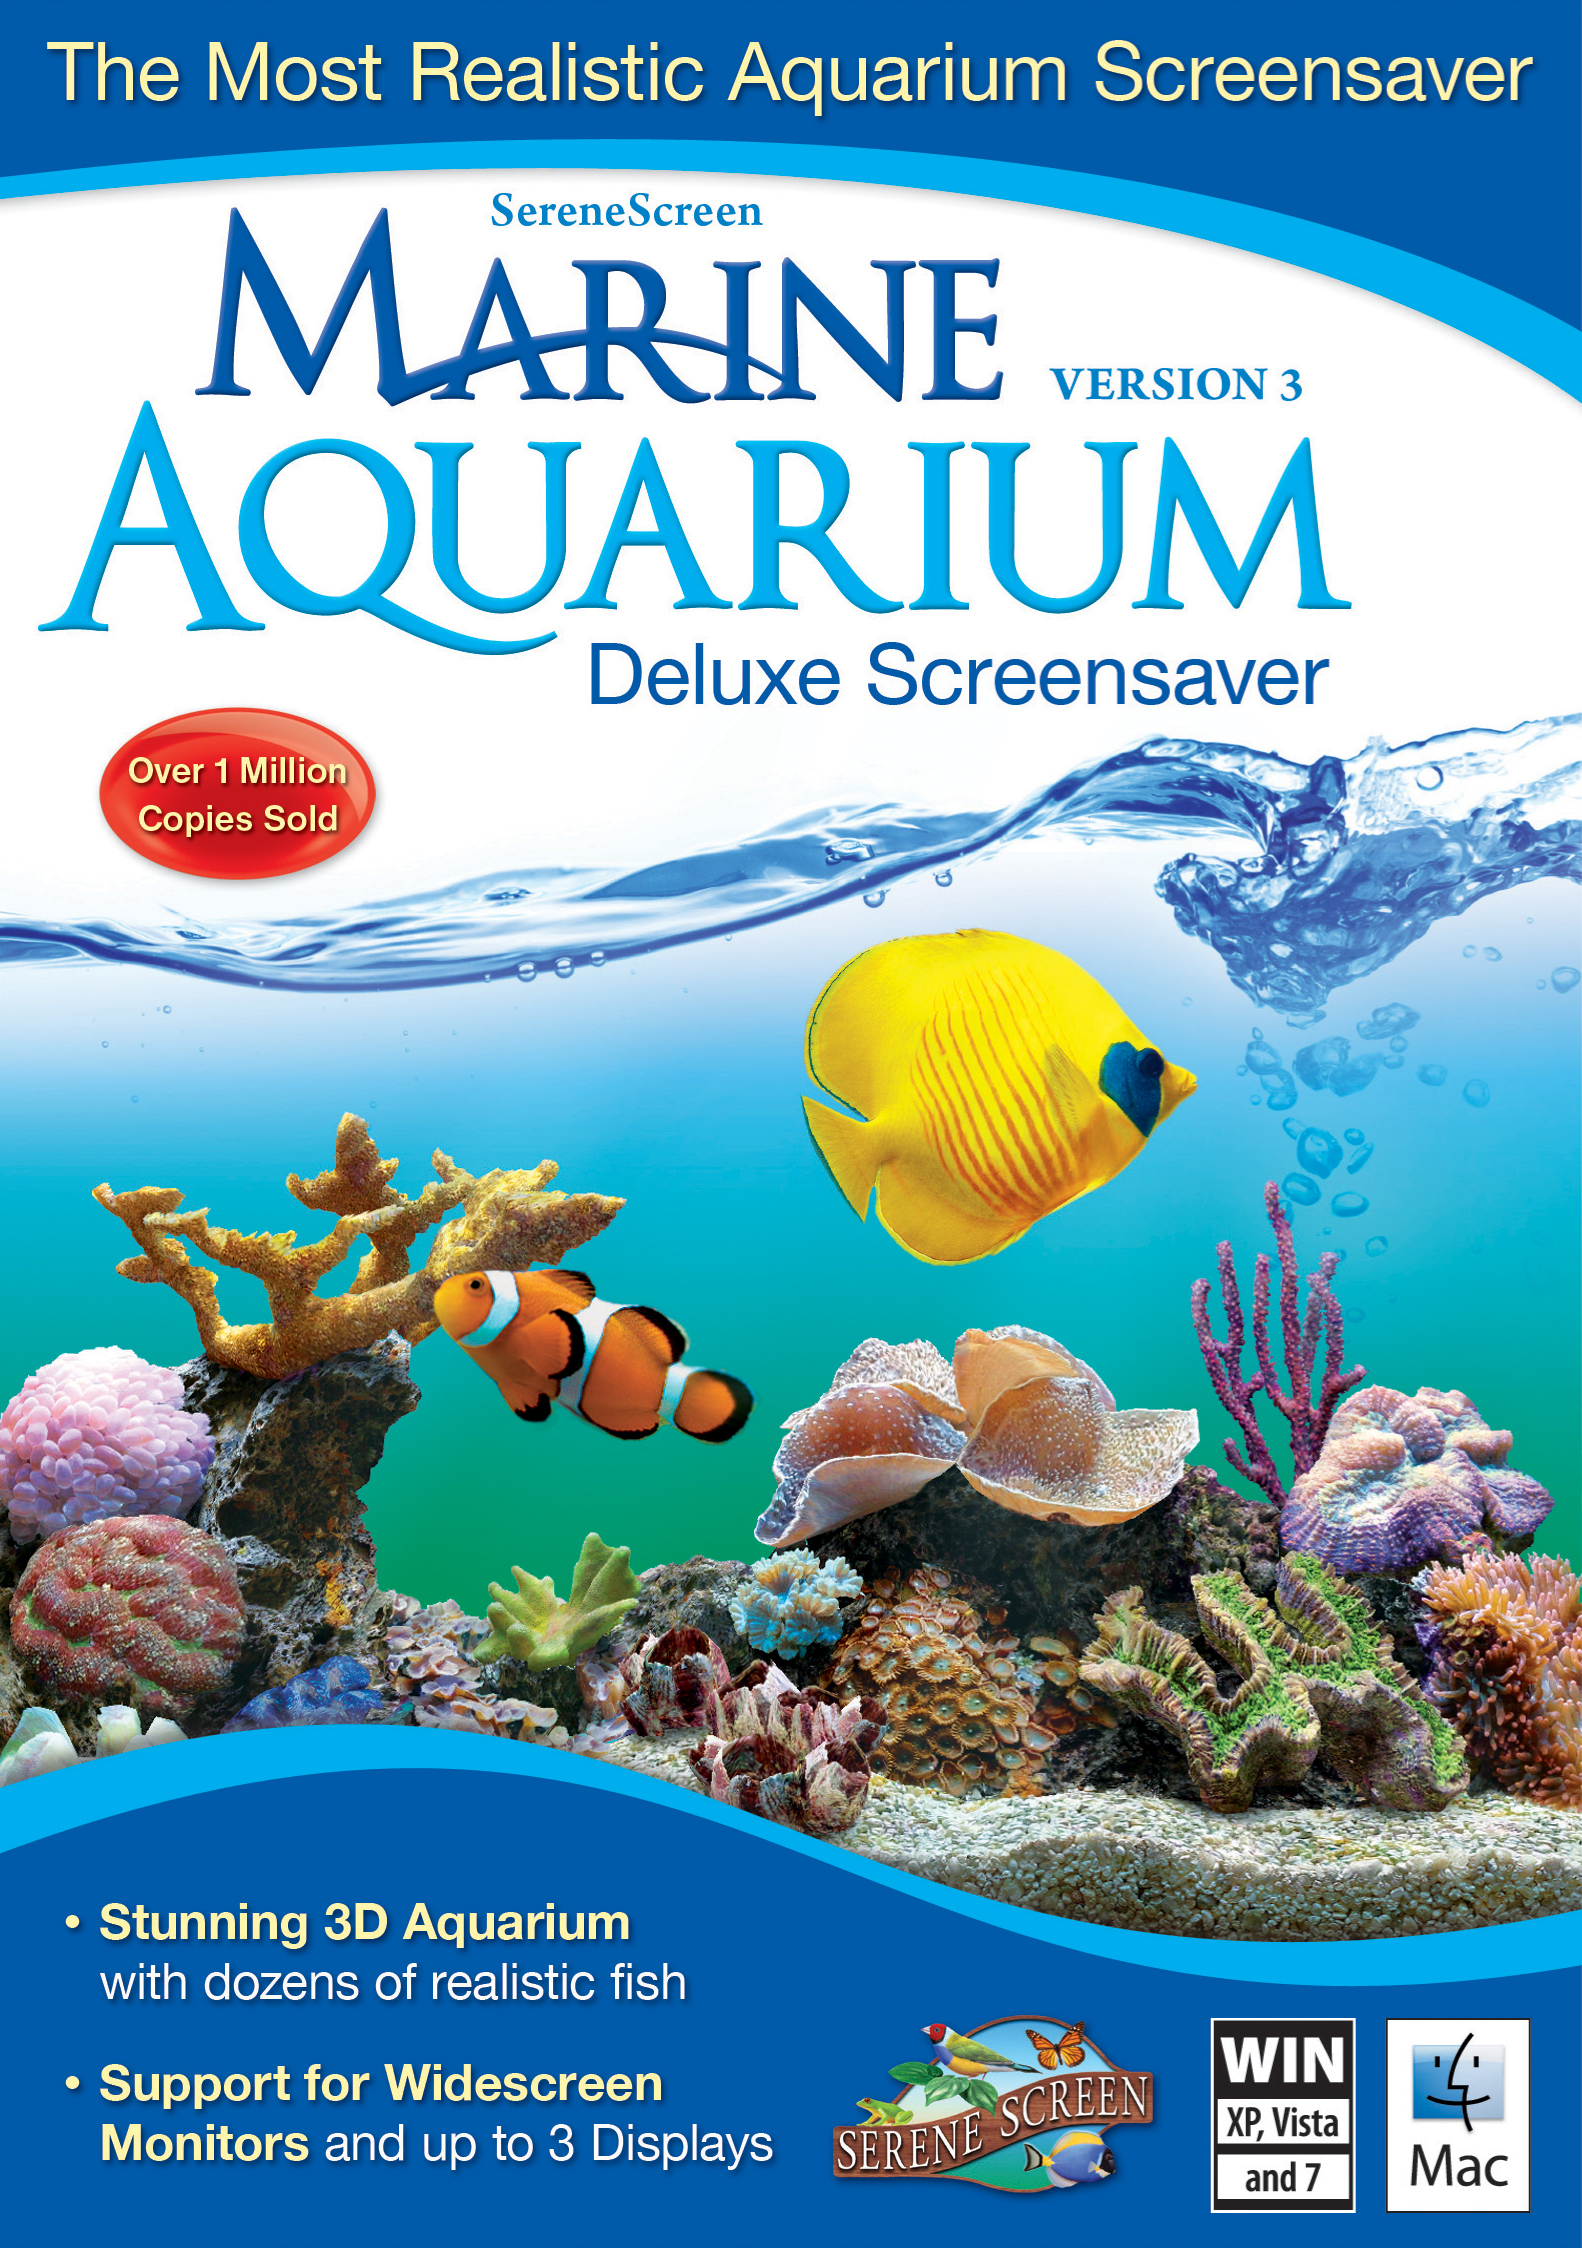 Marine aquarium. Аквариум. SERENESCREEN Marine Aquarium. Marine Aquarium Deluxe 3.0. Заставка Marine Aquarium.